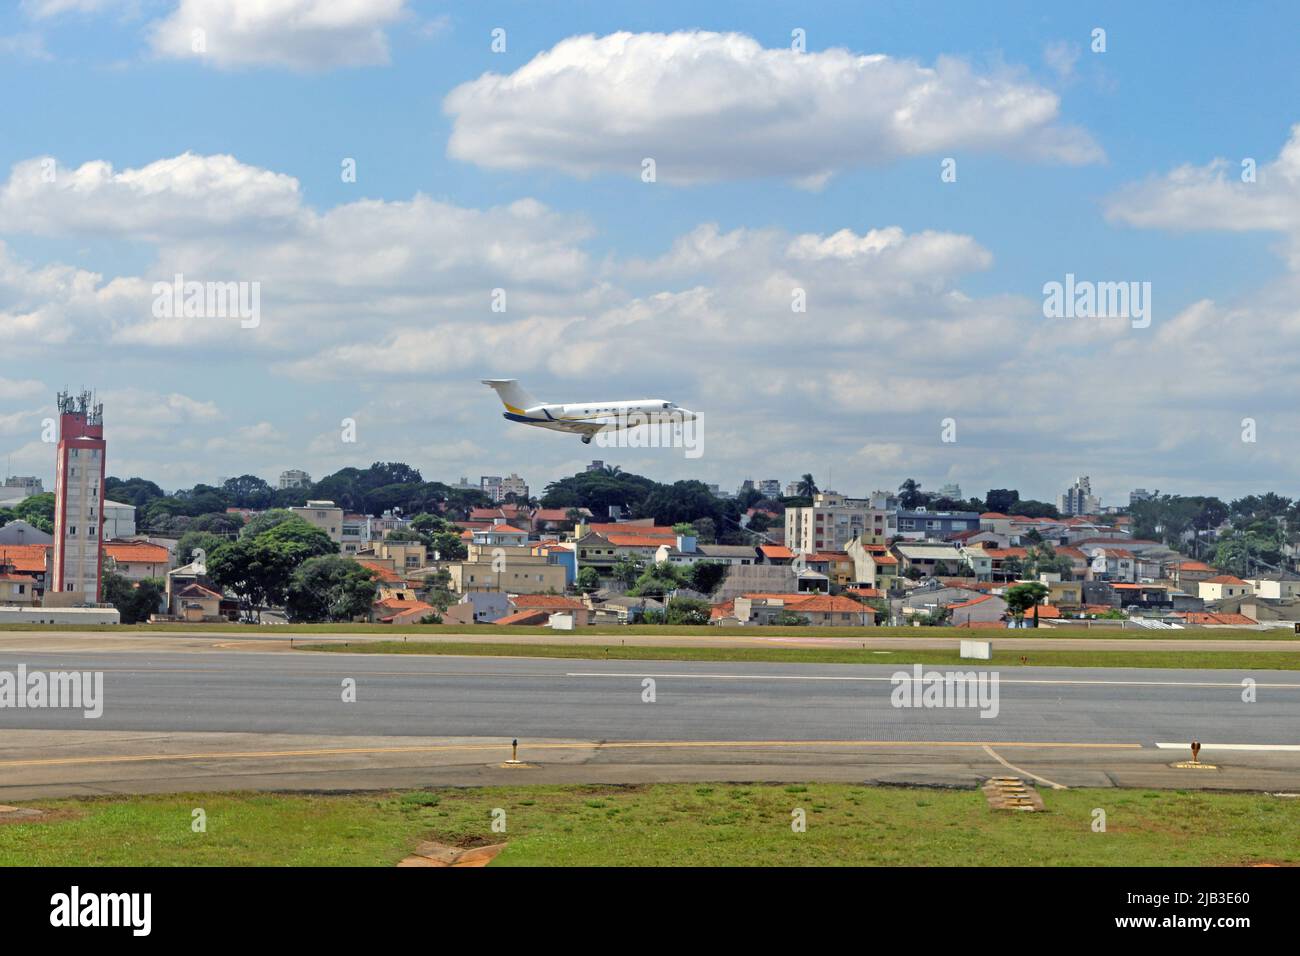 Aerial views of urban centers, Sao Paulo - Brazil Stock Photo